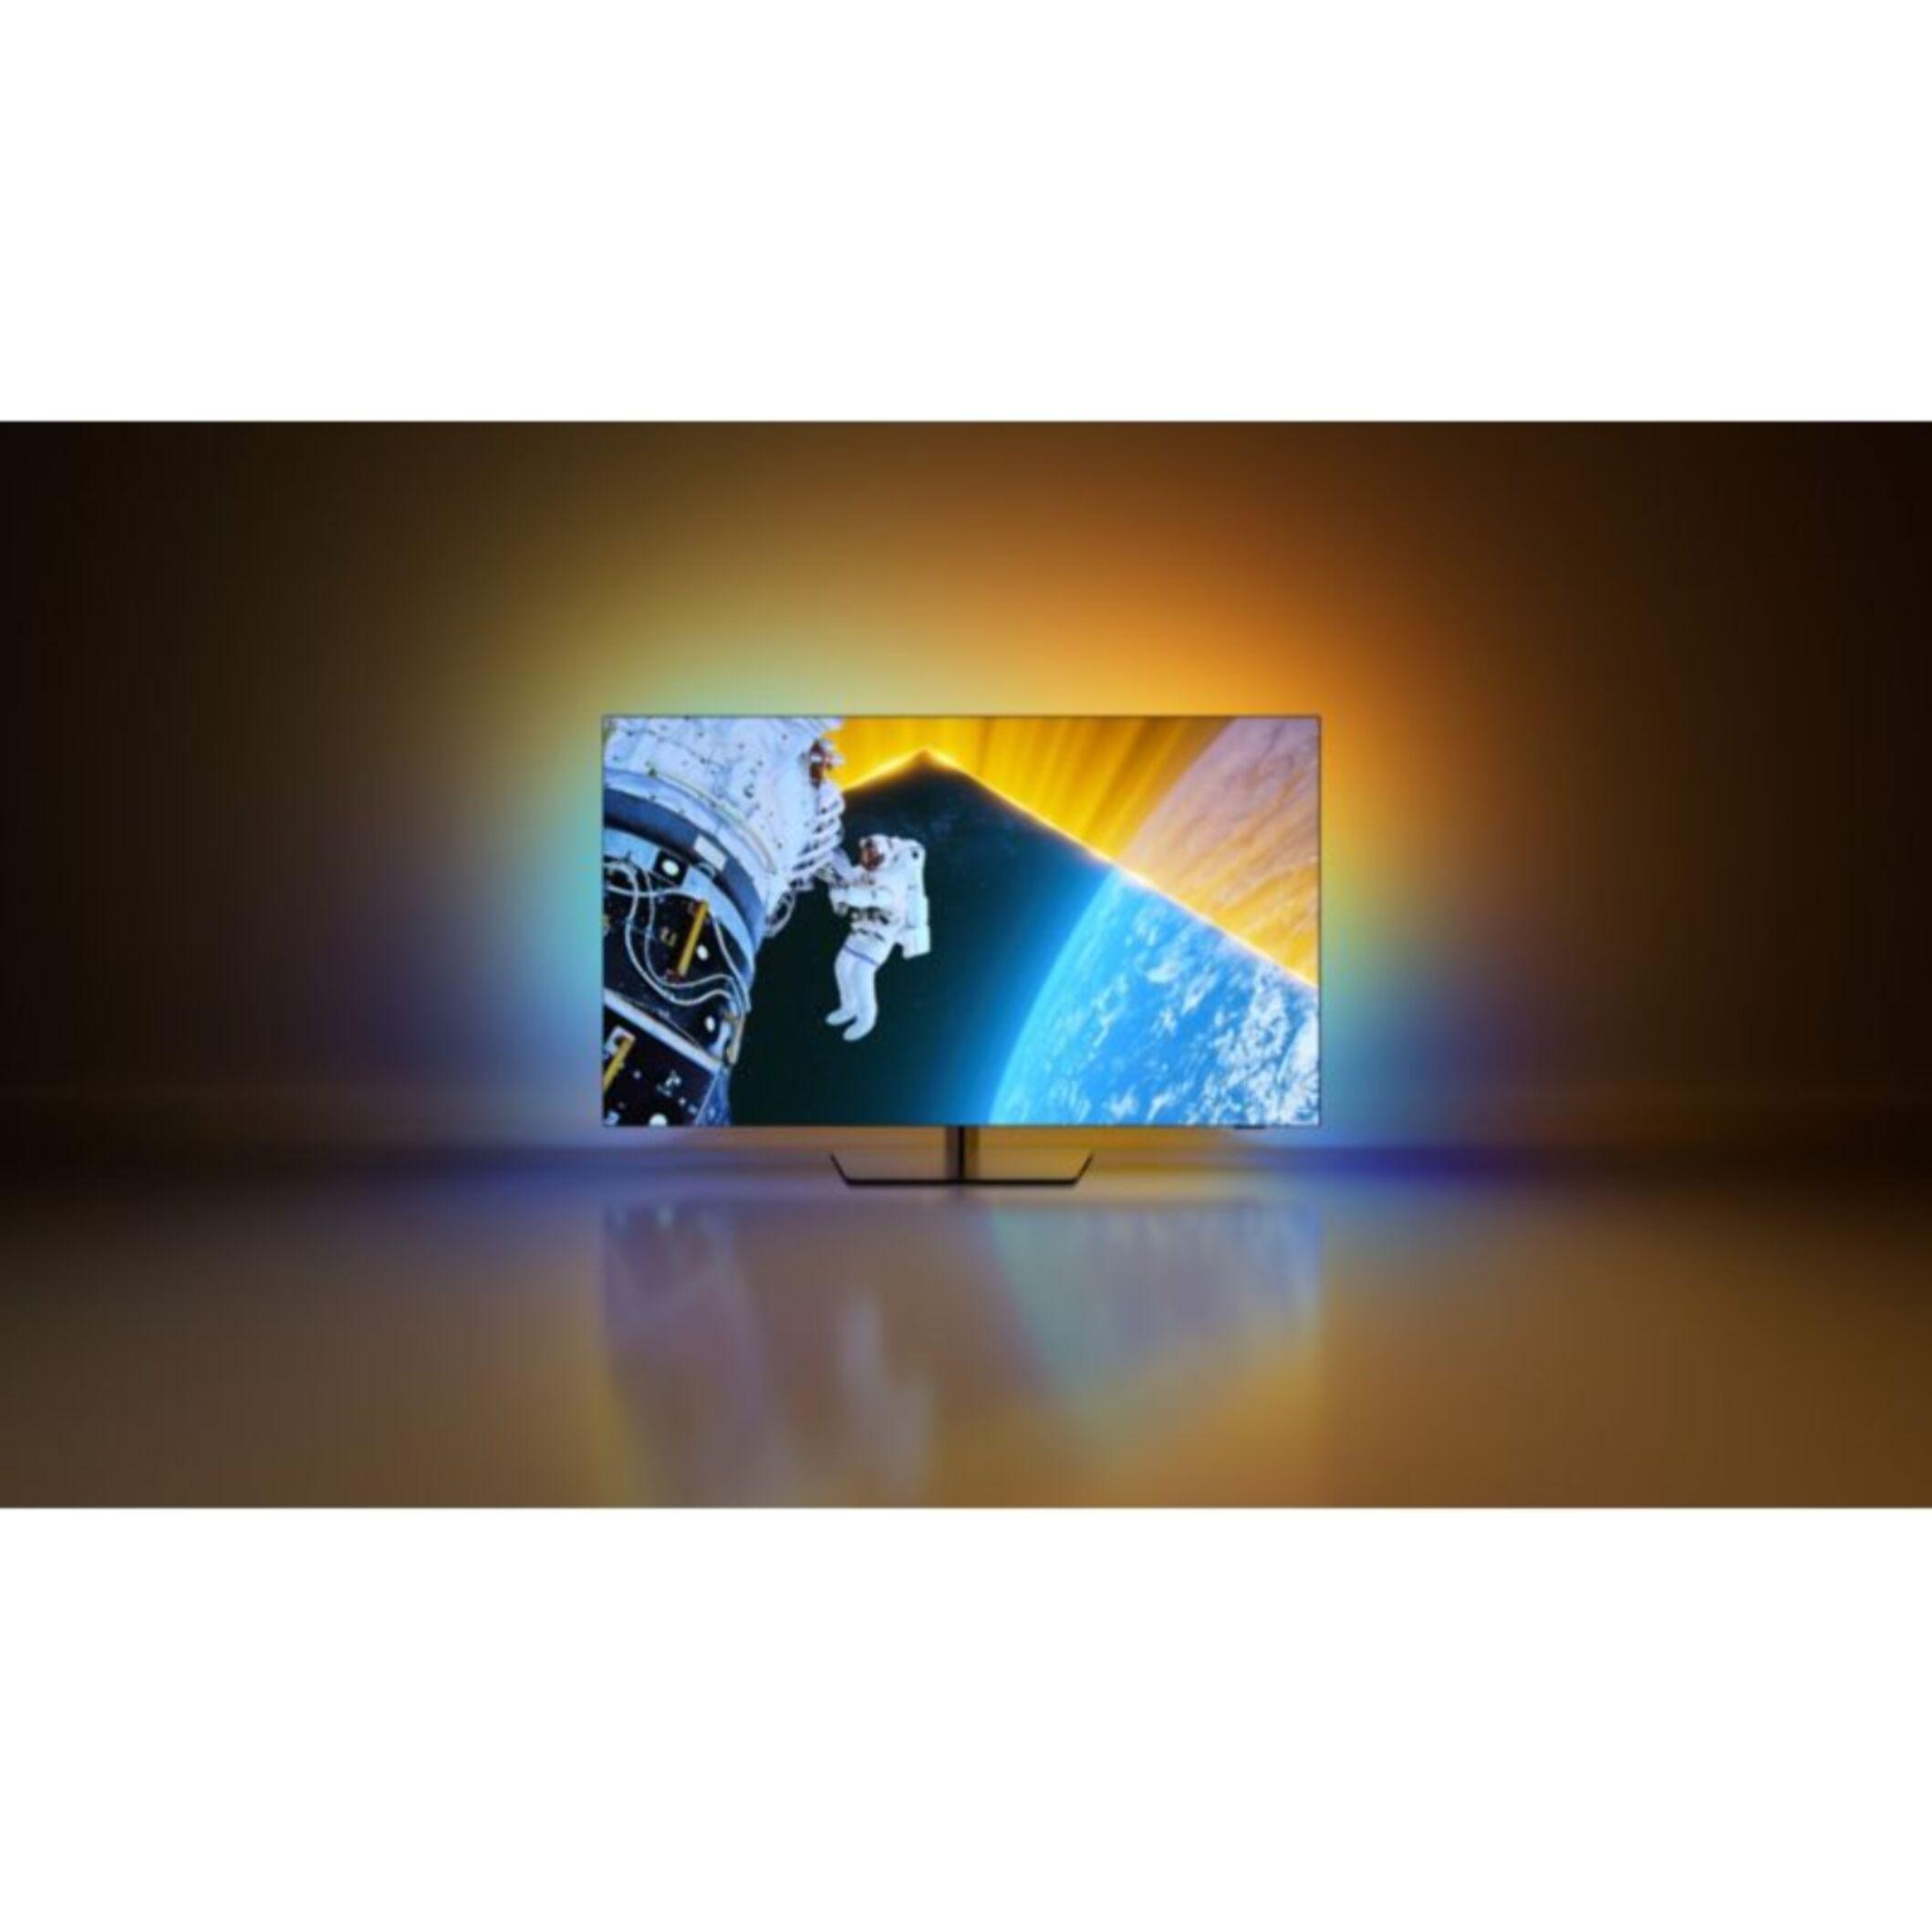 TV OLED PHILIPS 55OLED809 Ambilight Dalle EX 2024